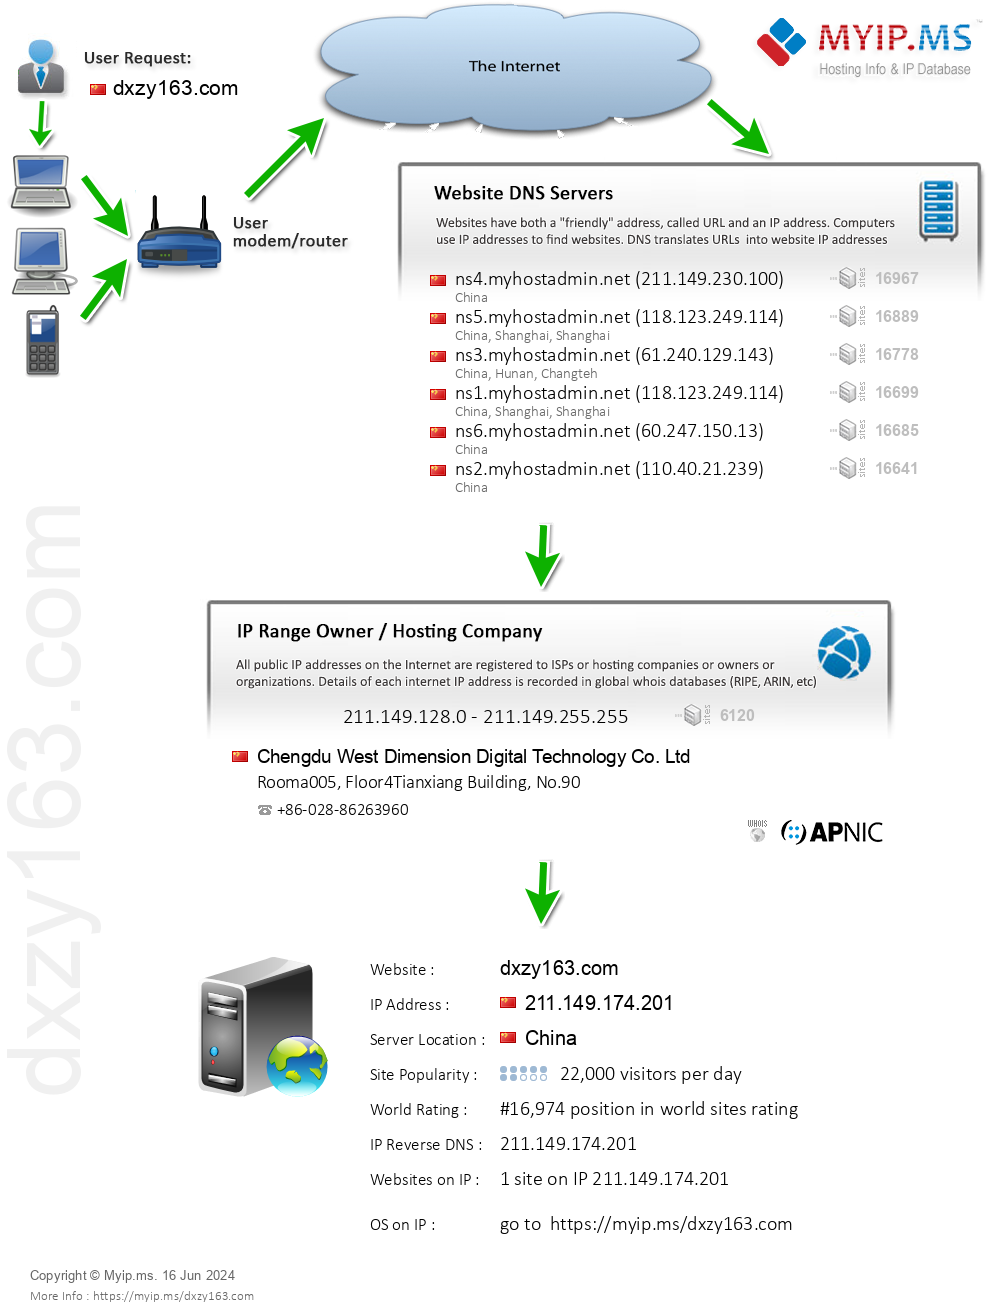 Dxzy163.com - Website Hosting Visual IP Diagram